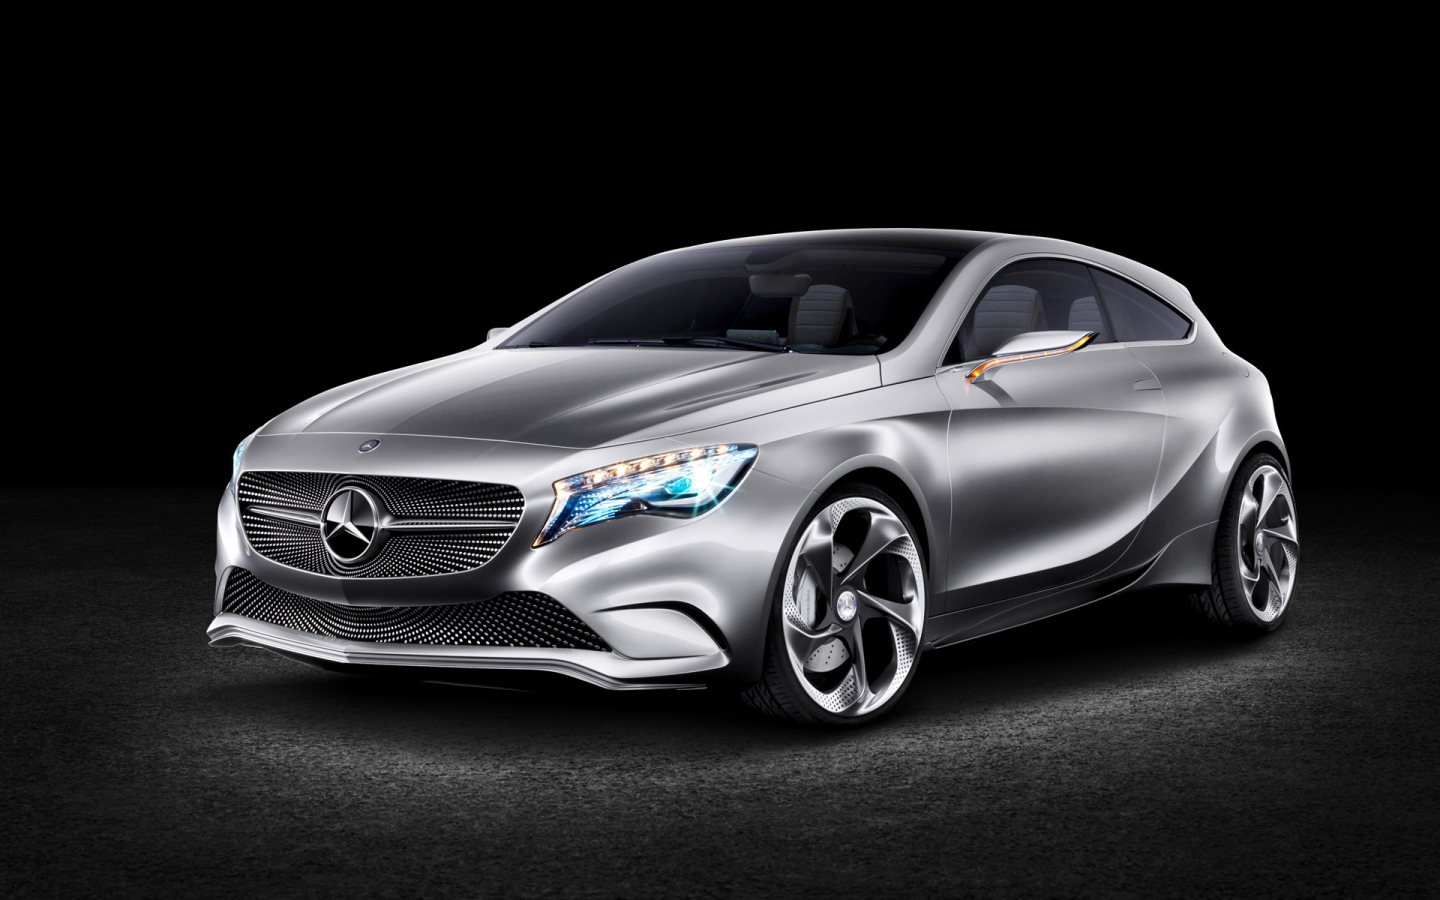 Mercedes Benz Concept A Class for 1440 x 900 widescreen resolution